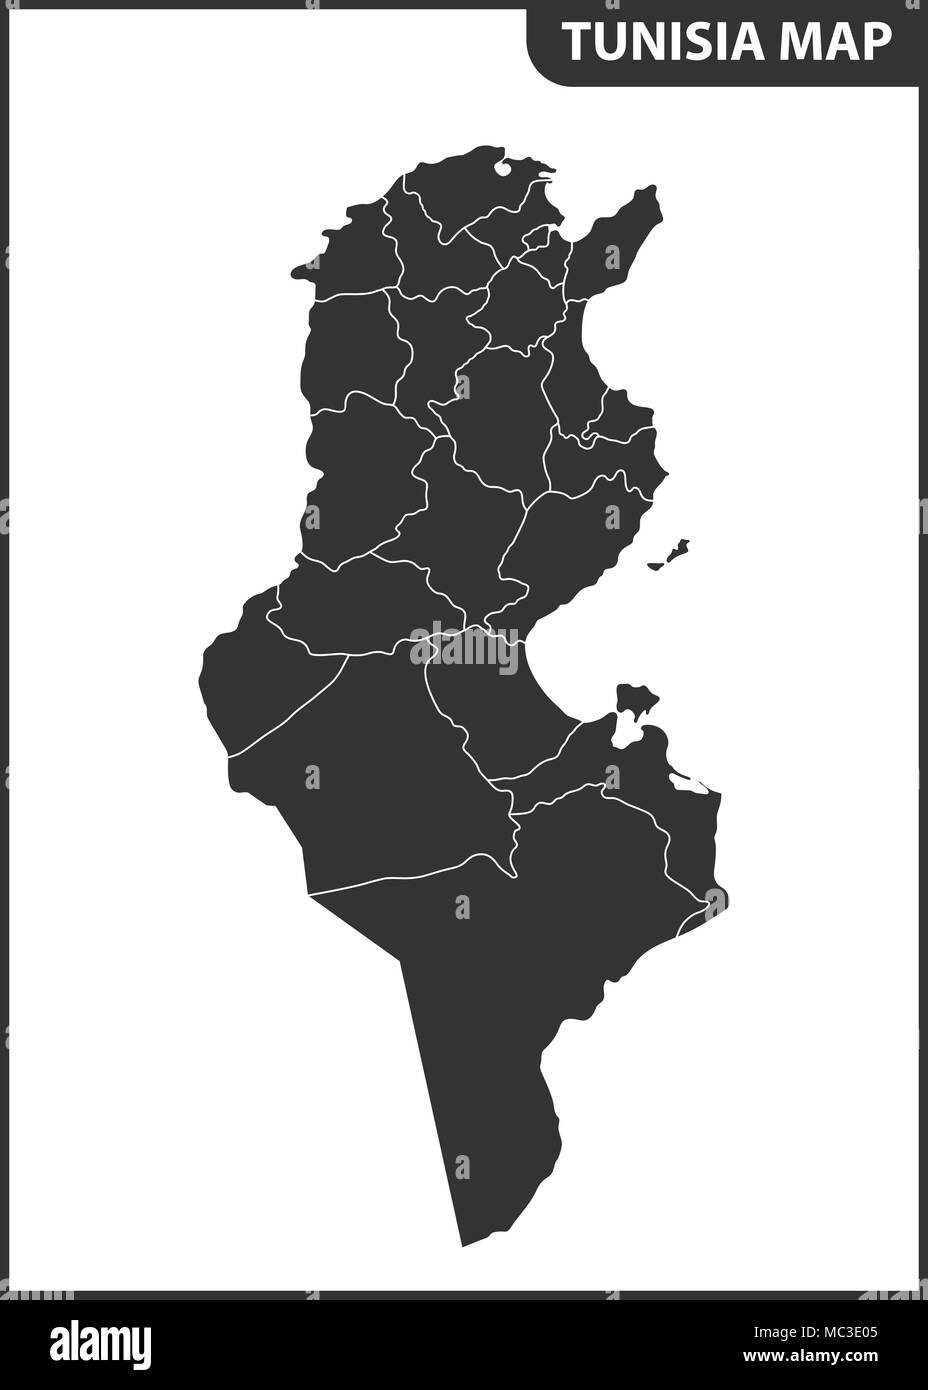 La carte détaillée de la Tunisie avec les régions ou états Illustration de Vecteur